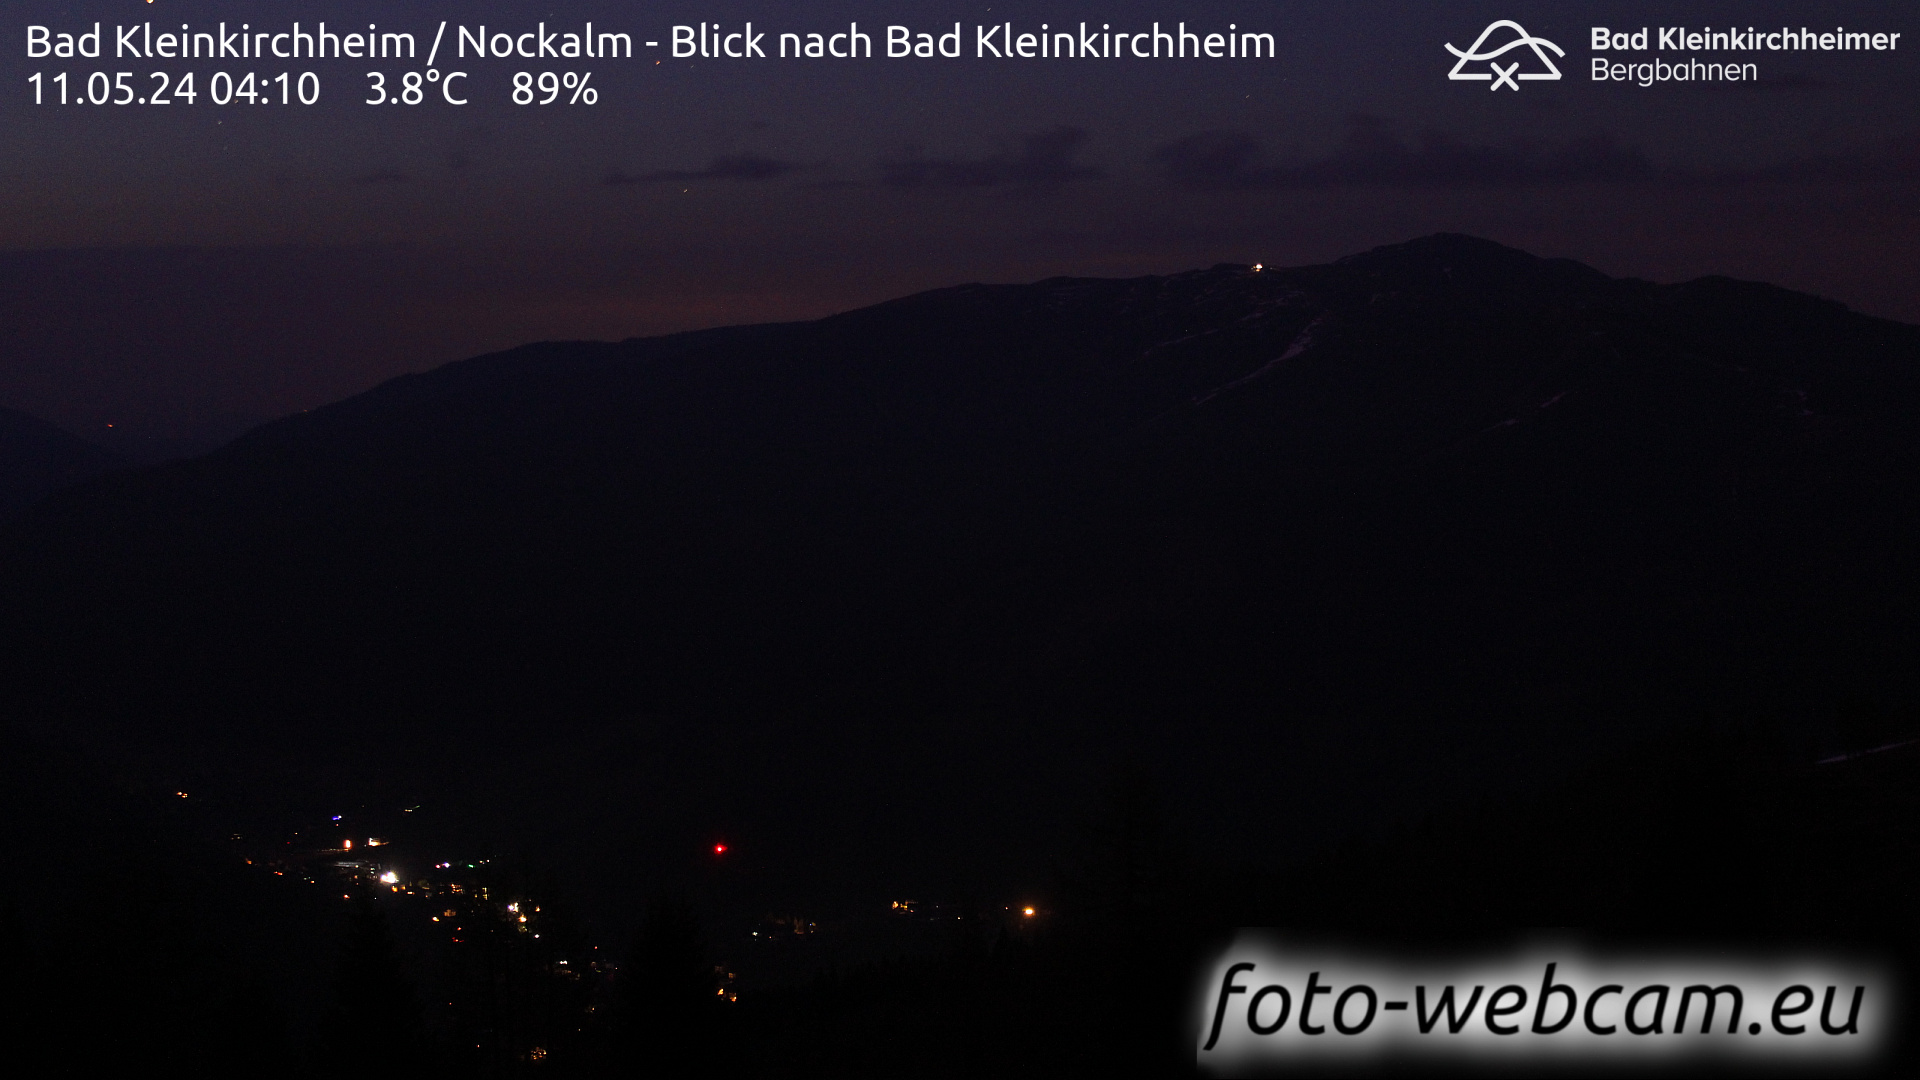 Bad Kleinkirchheim Fr. 04:17